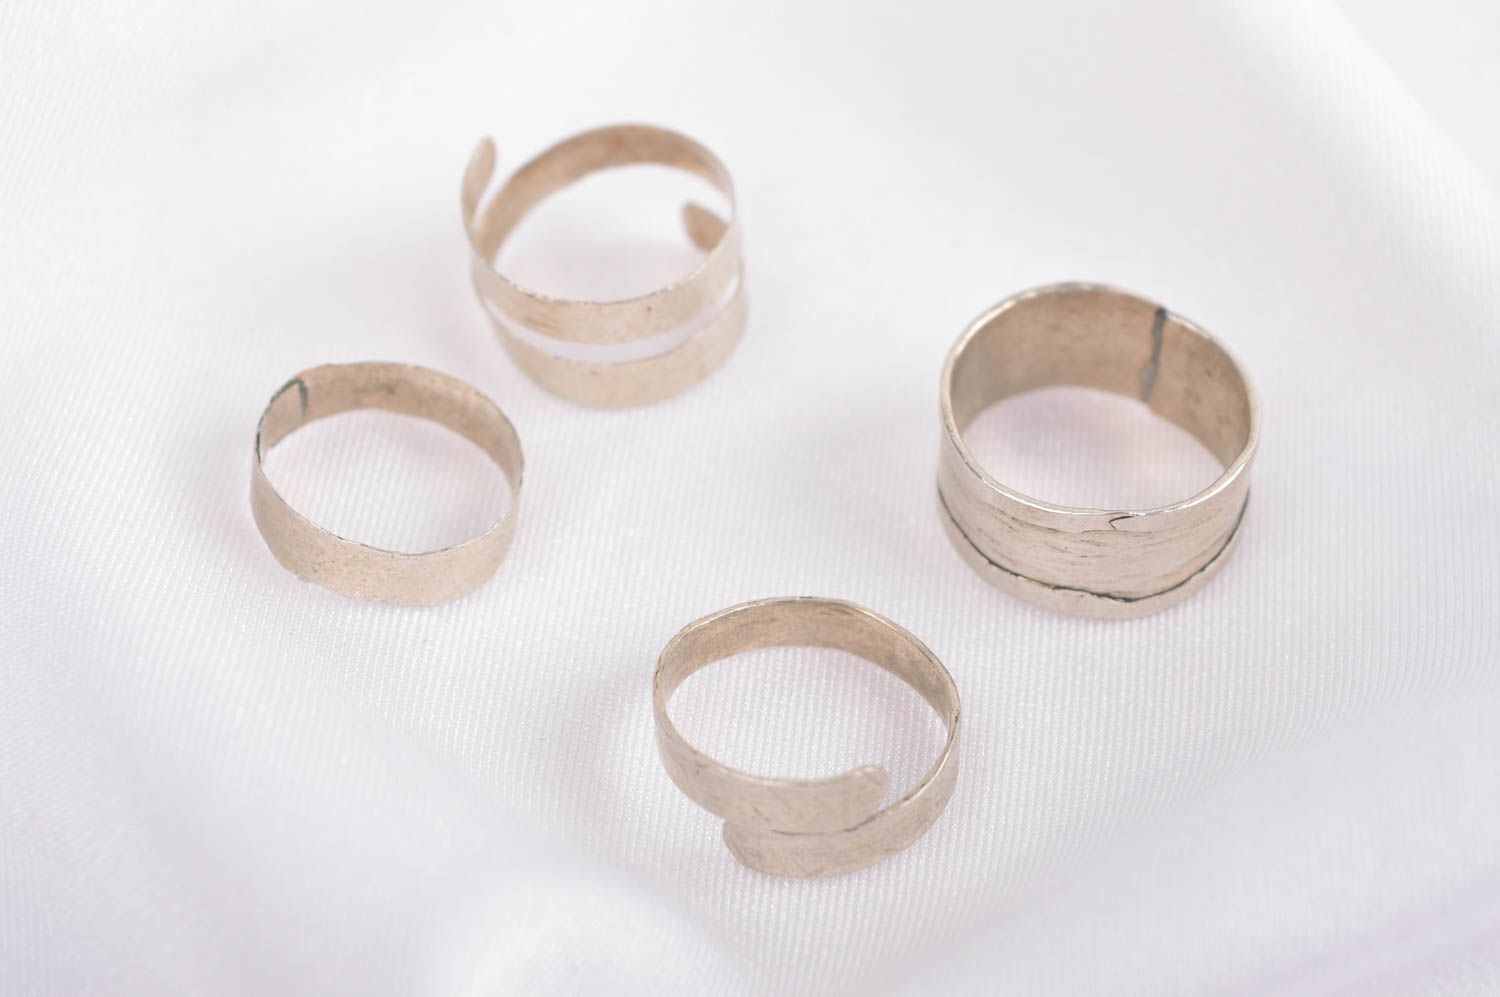 Стильные кольца хэнд мэйд украшения из мельхиора женские кольца на фаланги 4 шт фото 1